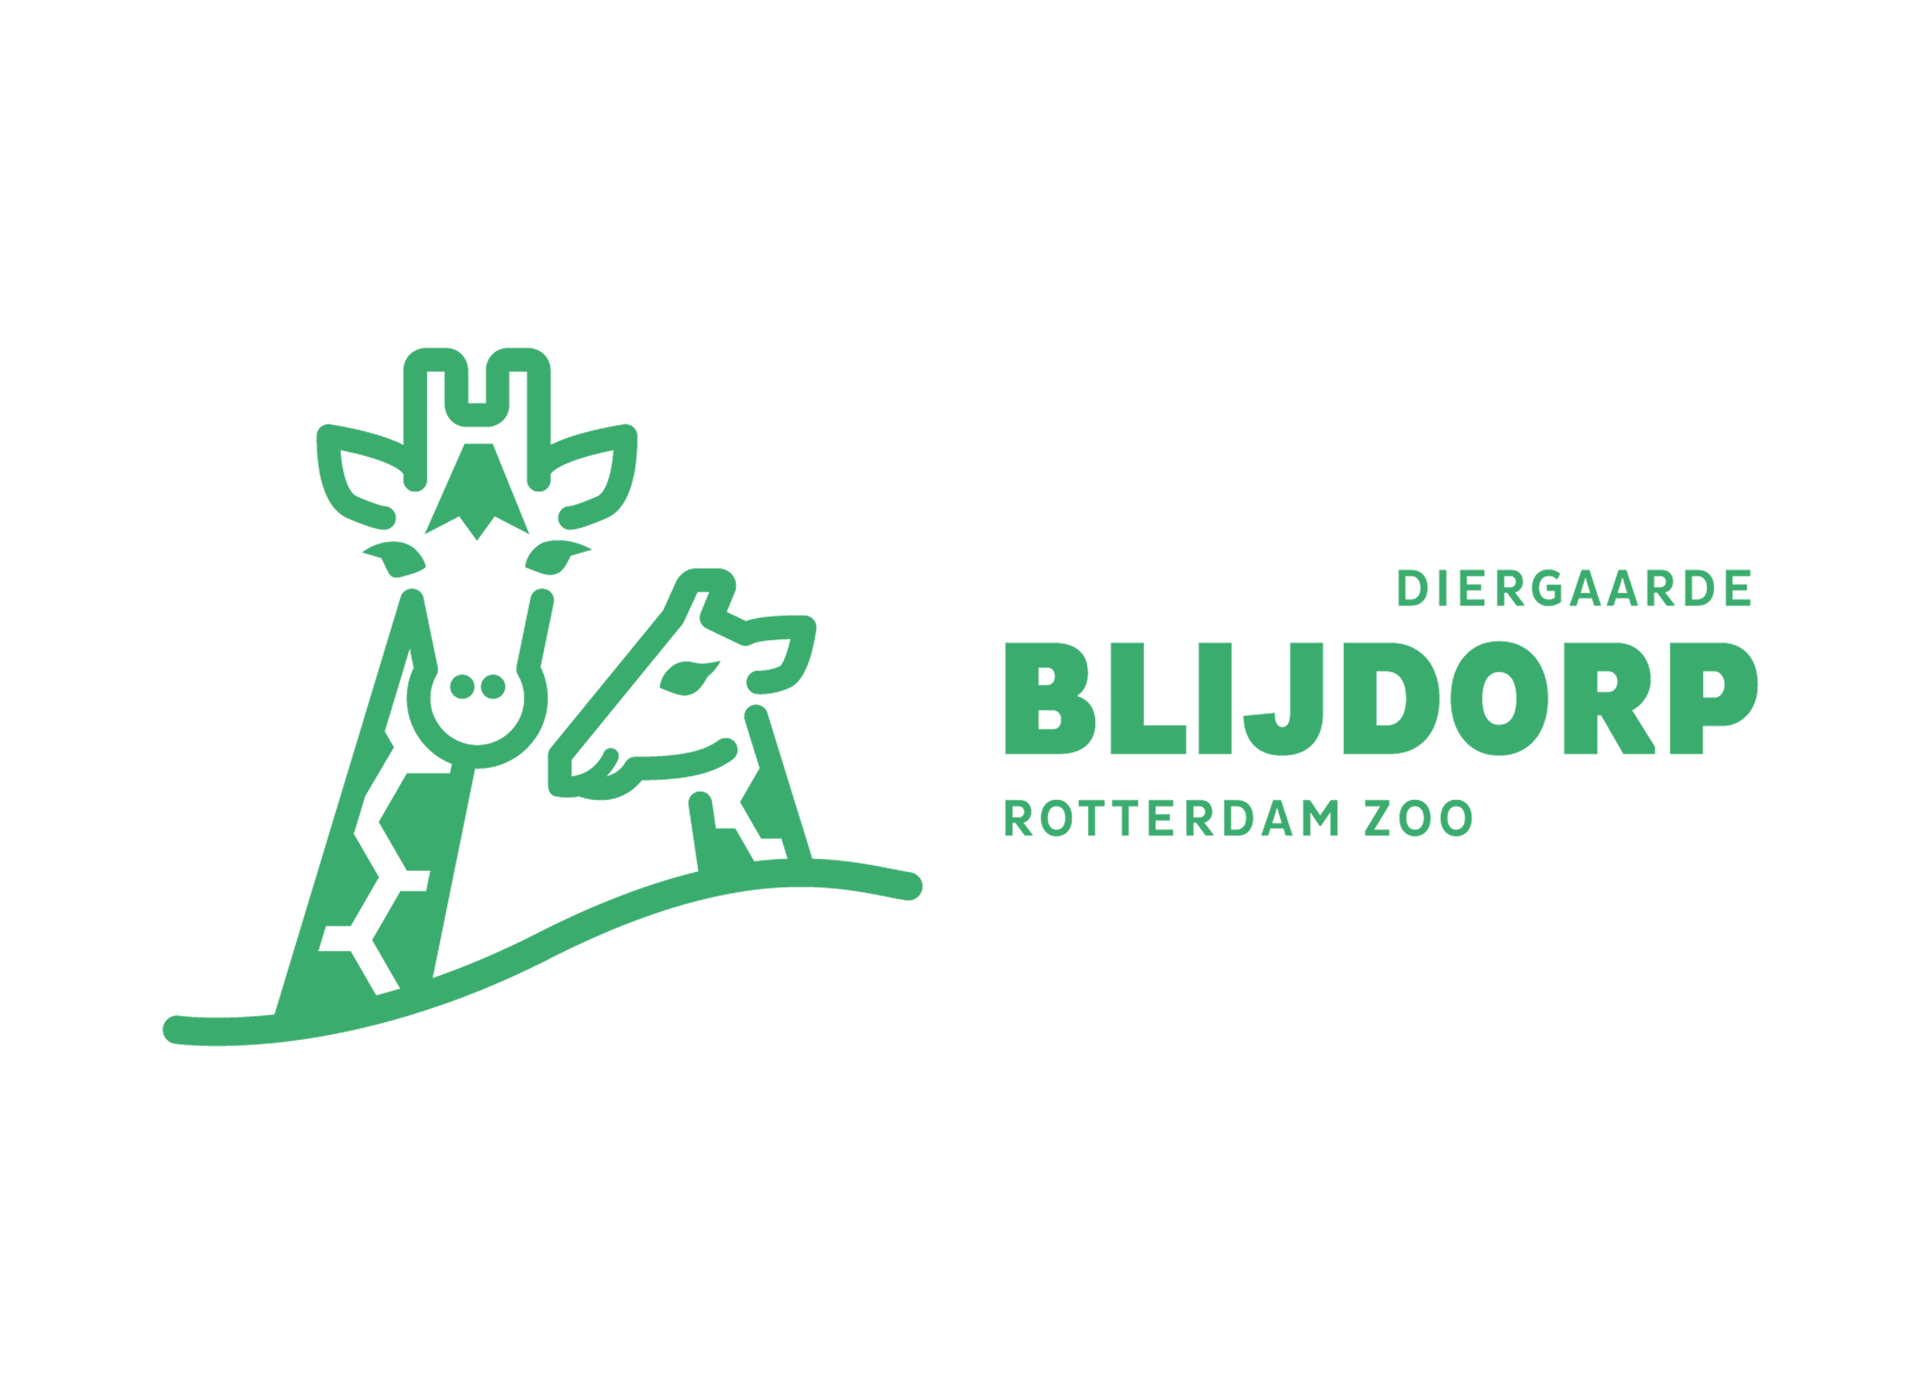 Diergaarde Blijdorp logo